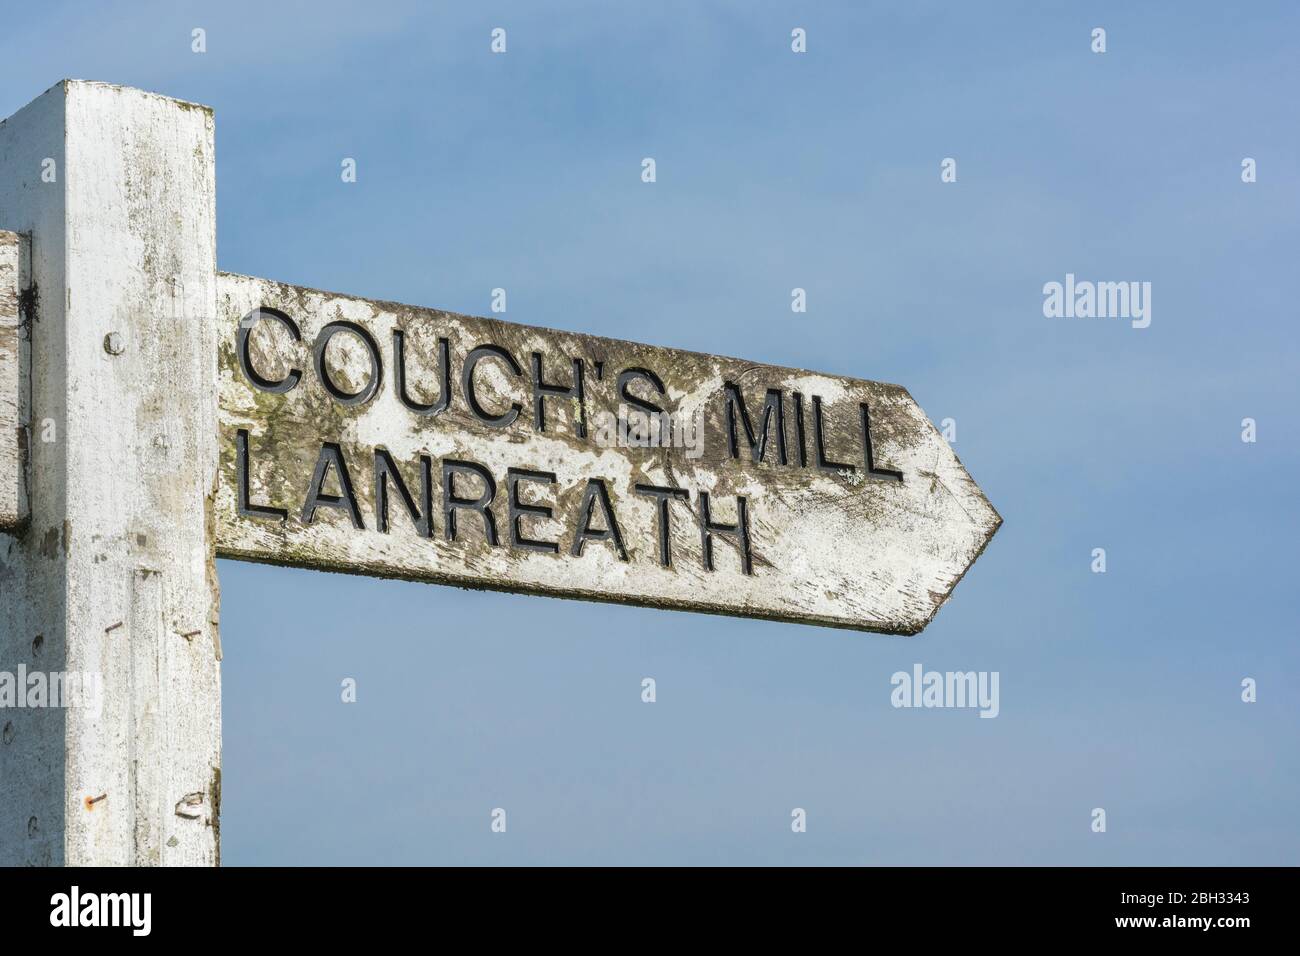 Locale rurale Cornish Road segno per Couch's Mill e Lanreath - ambientato contro il cielo blu soleggiato Springtime. Foto Stock